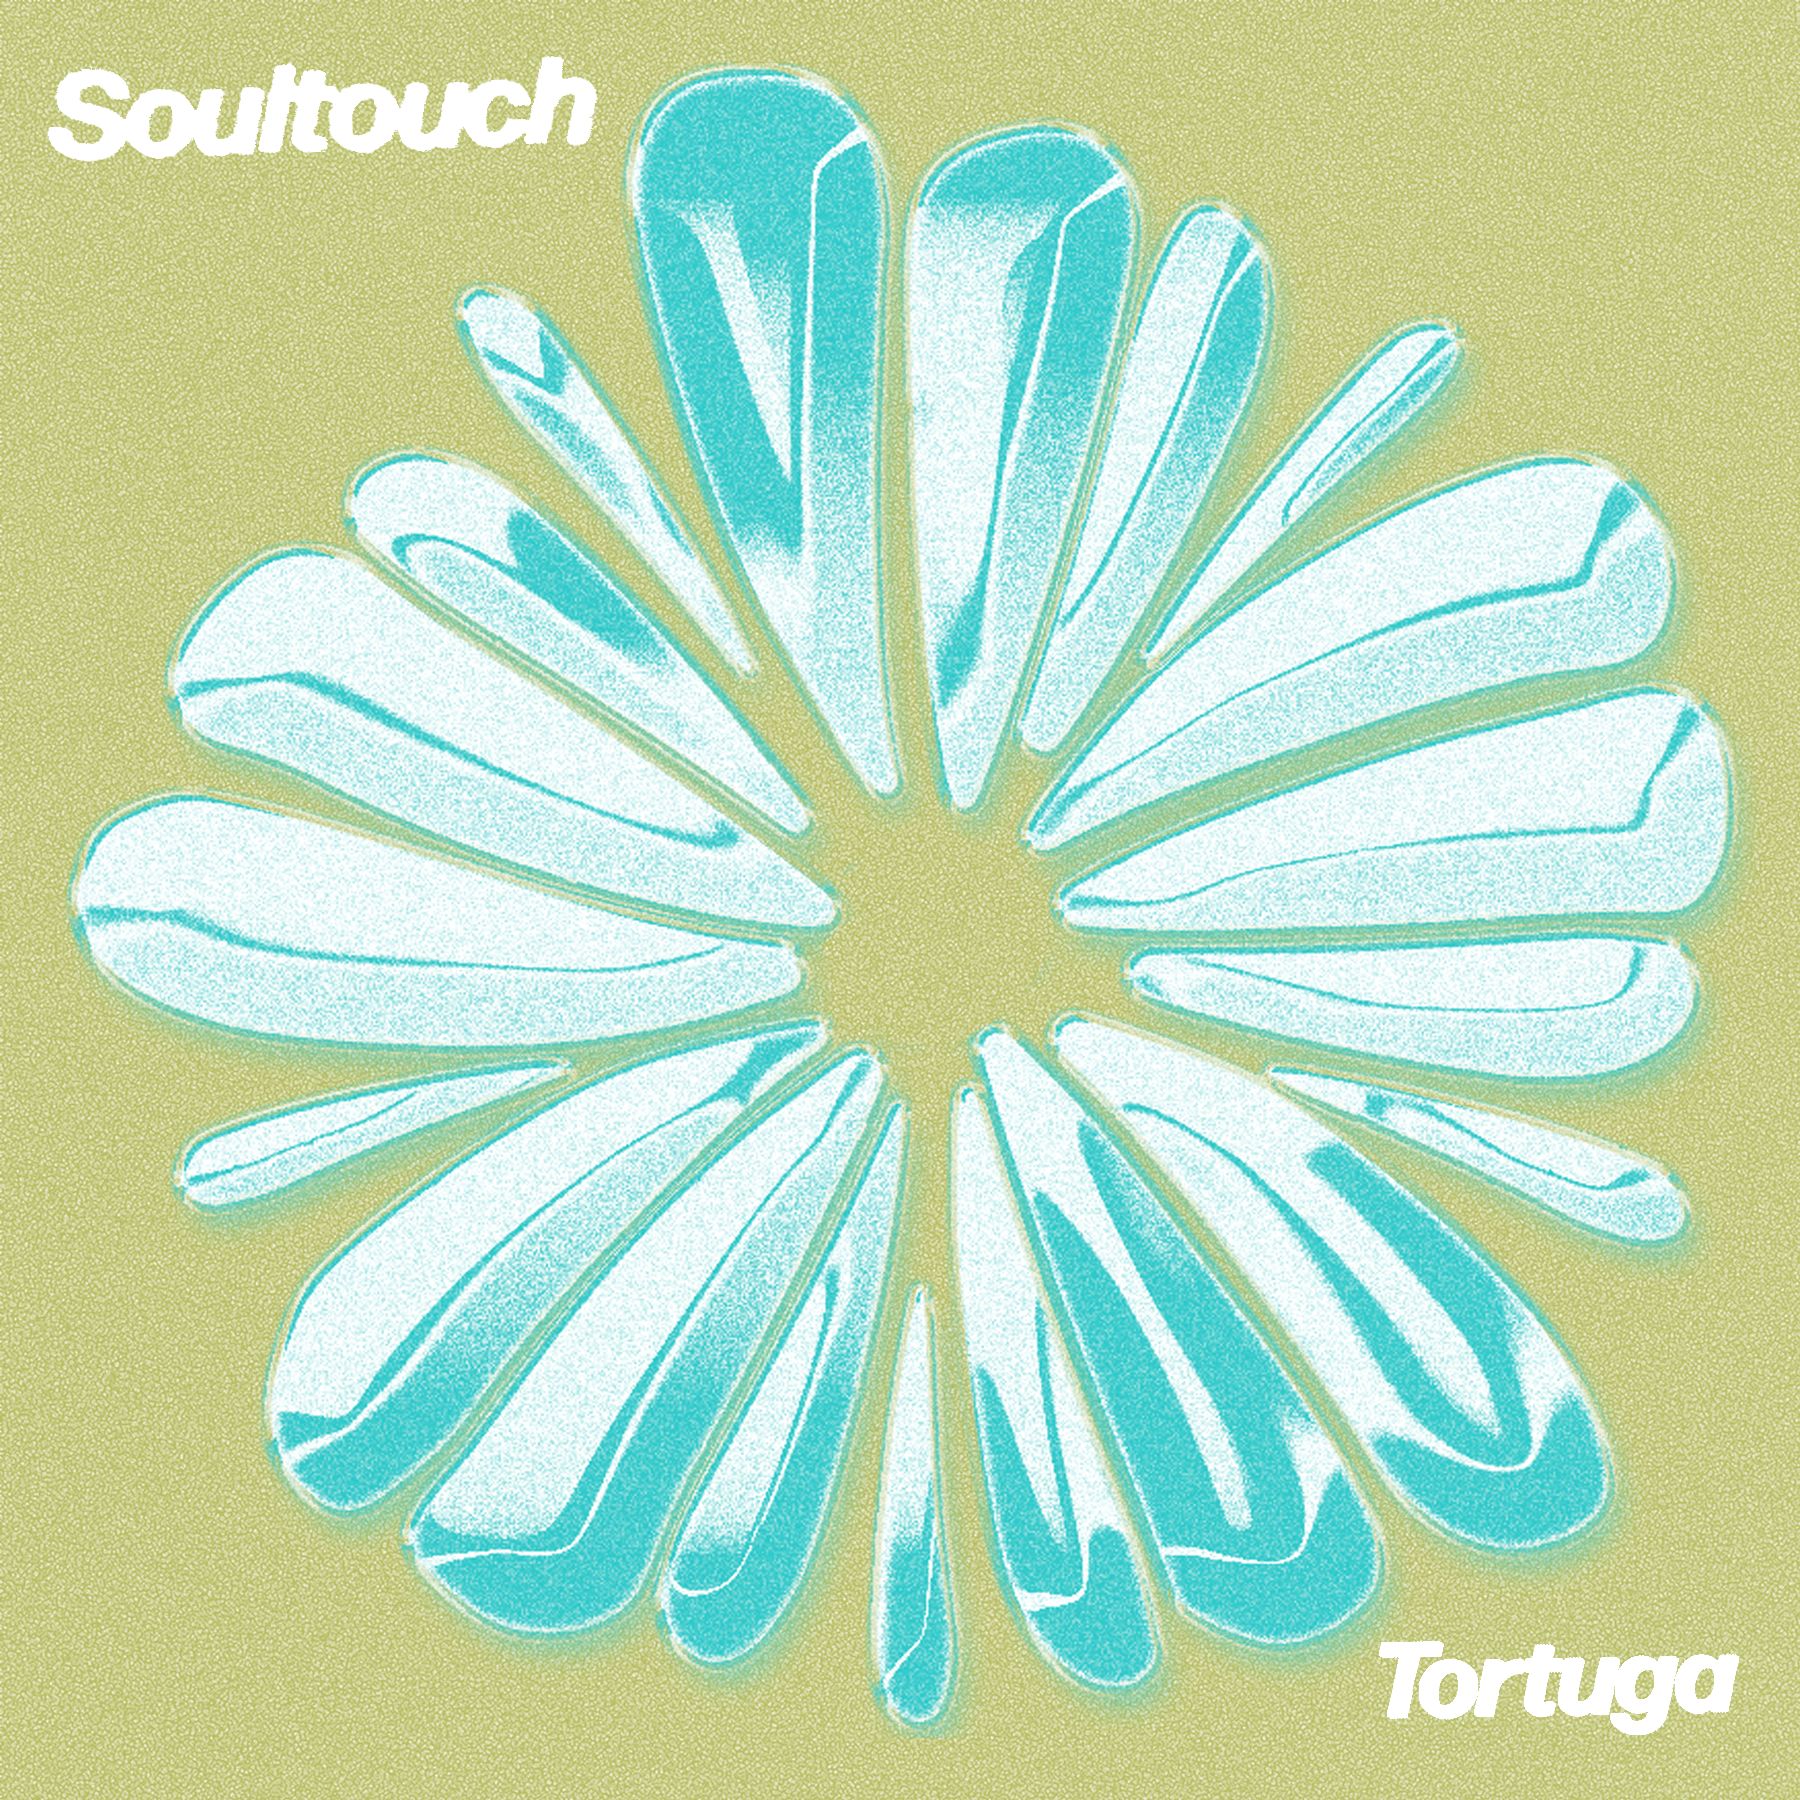 Descarregar PREMIERE : Tortuga - Soultouch